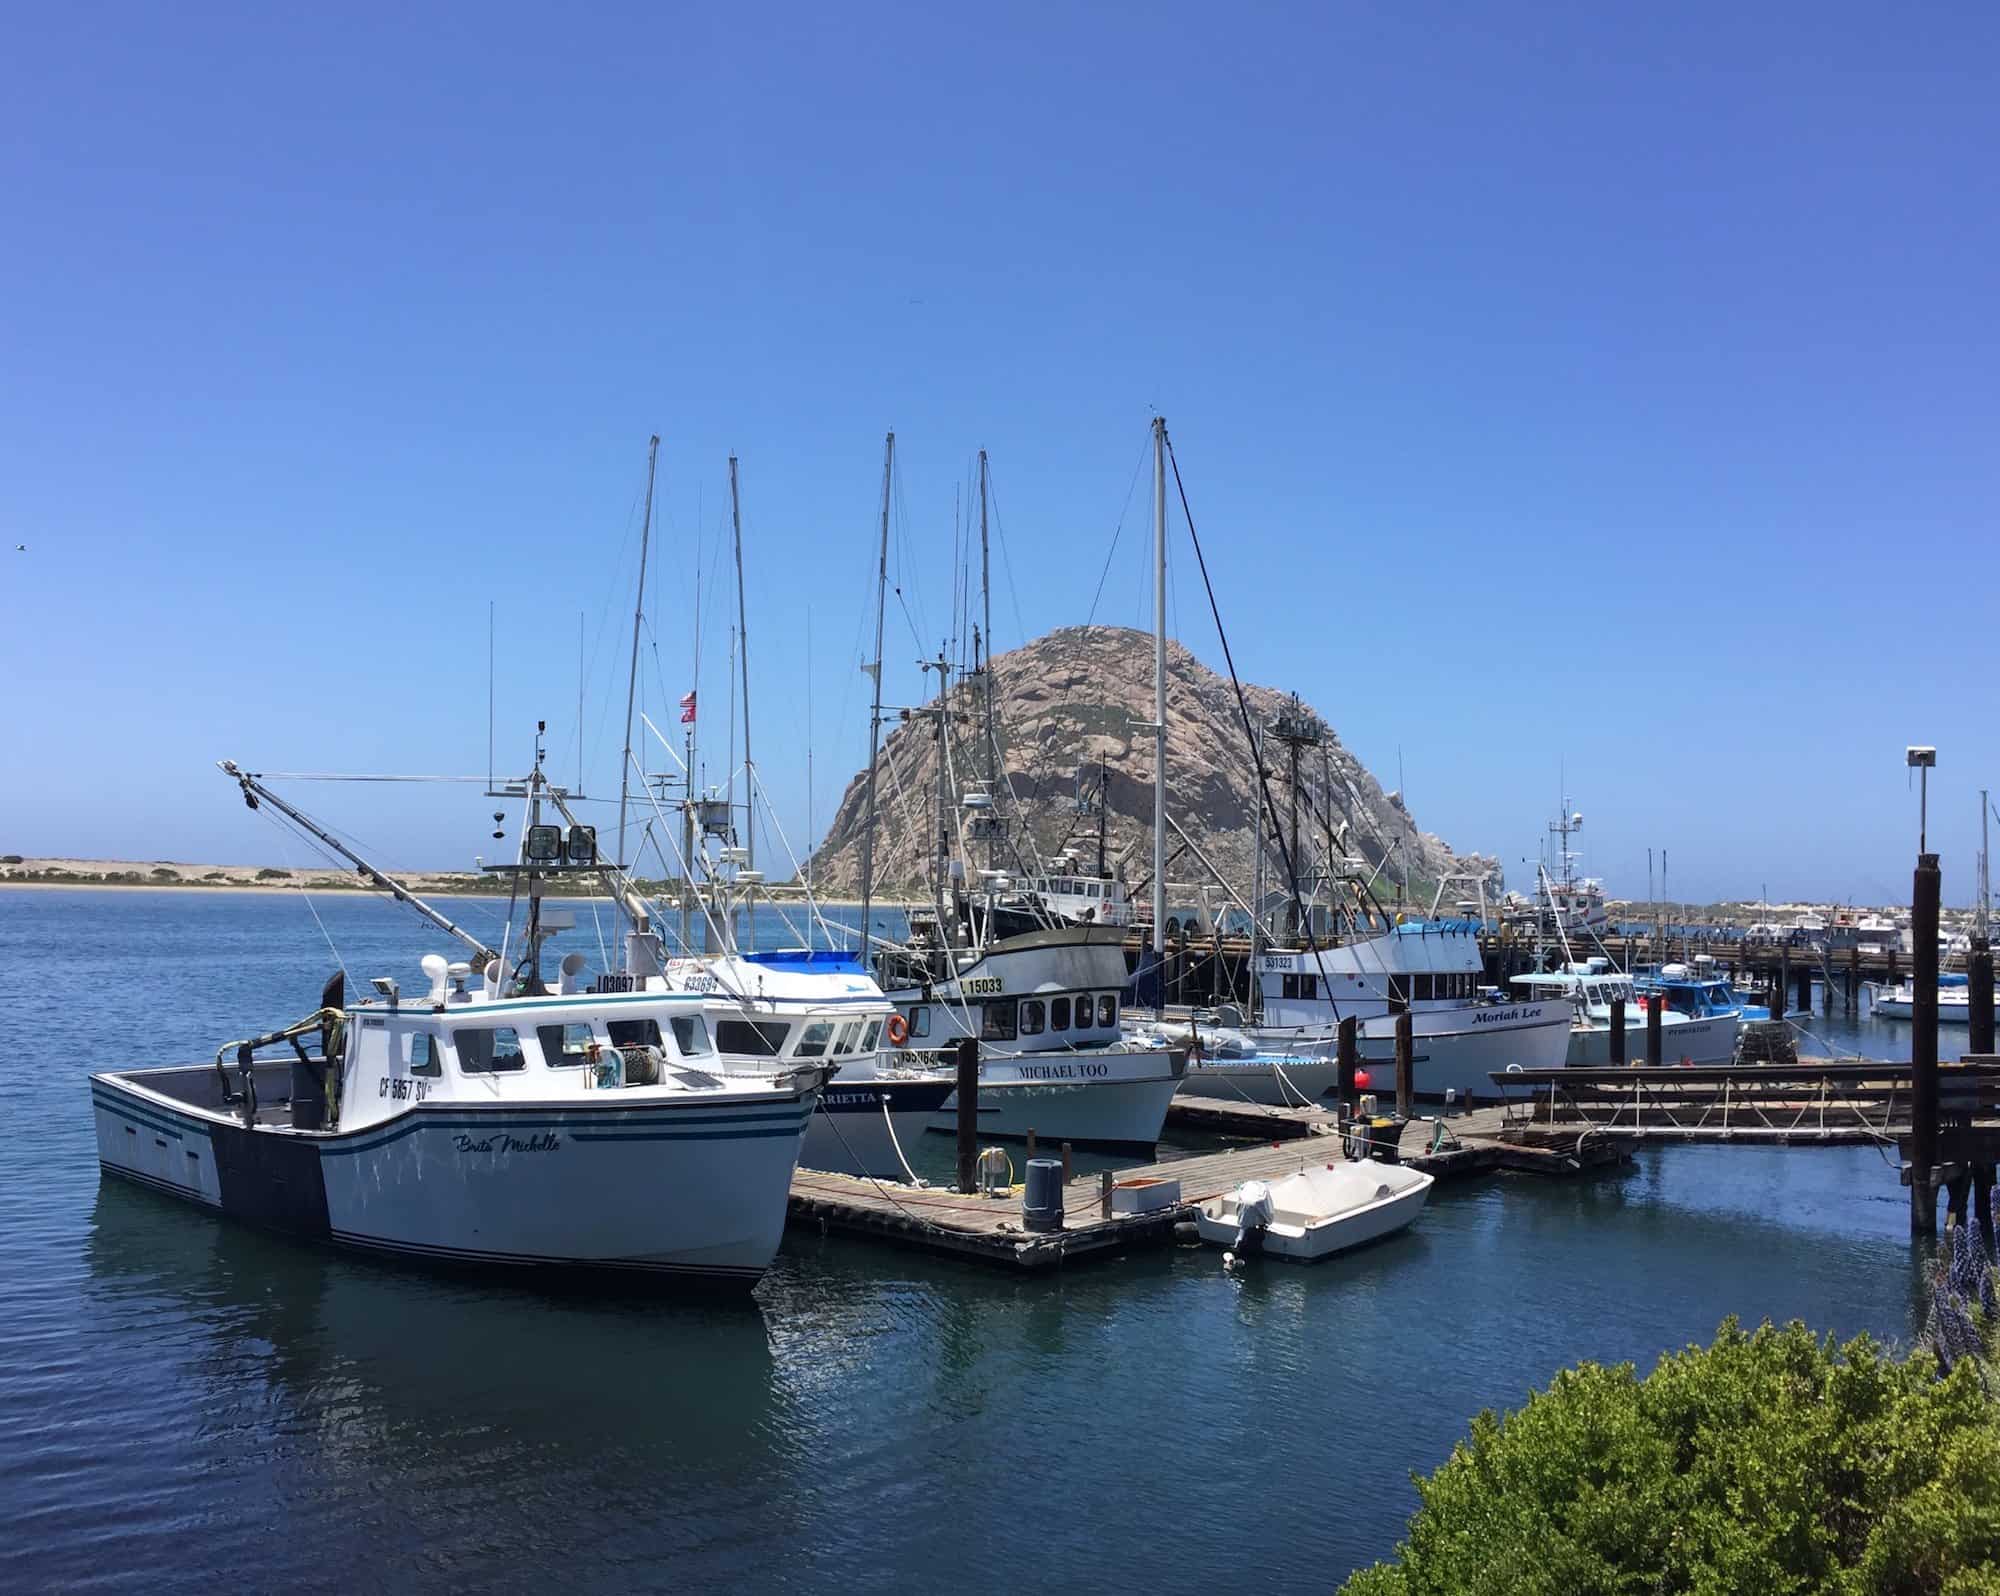 Morro Bay Morro Rock, a prominent ancient volcanic plug in Morro Bay, California